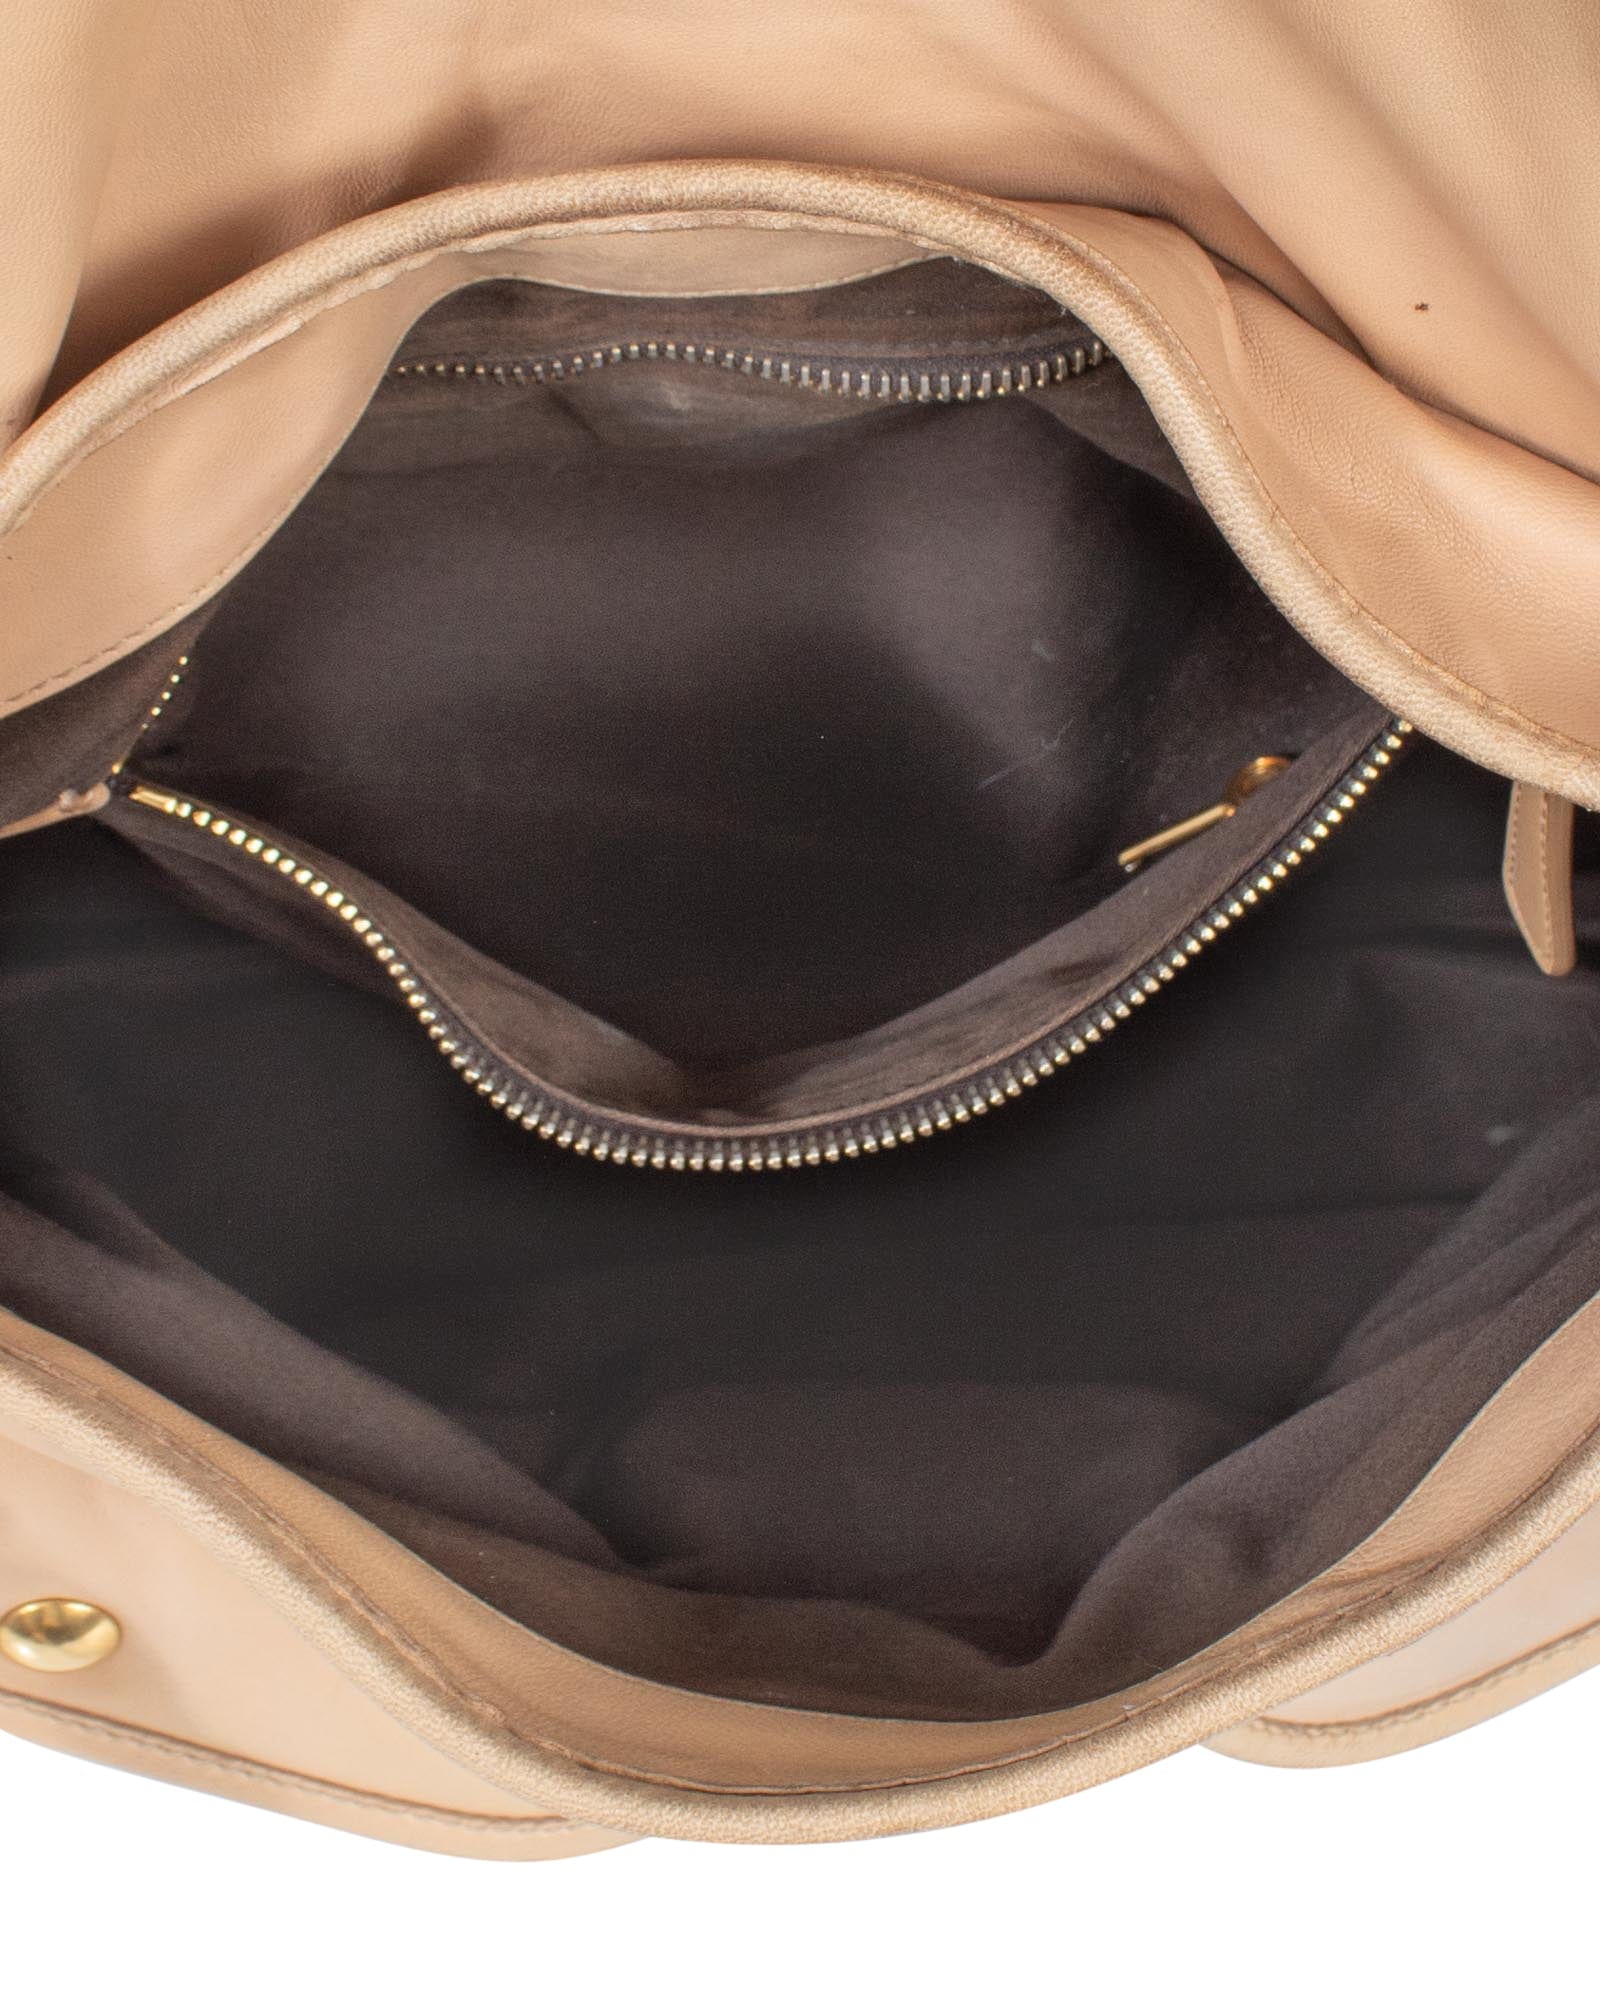 Miu Miu, Bags, Miu Miu Leather Shoulder Bag